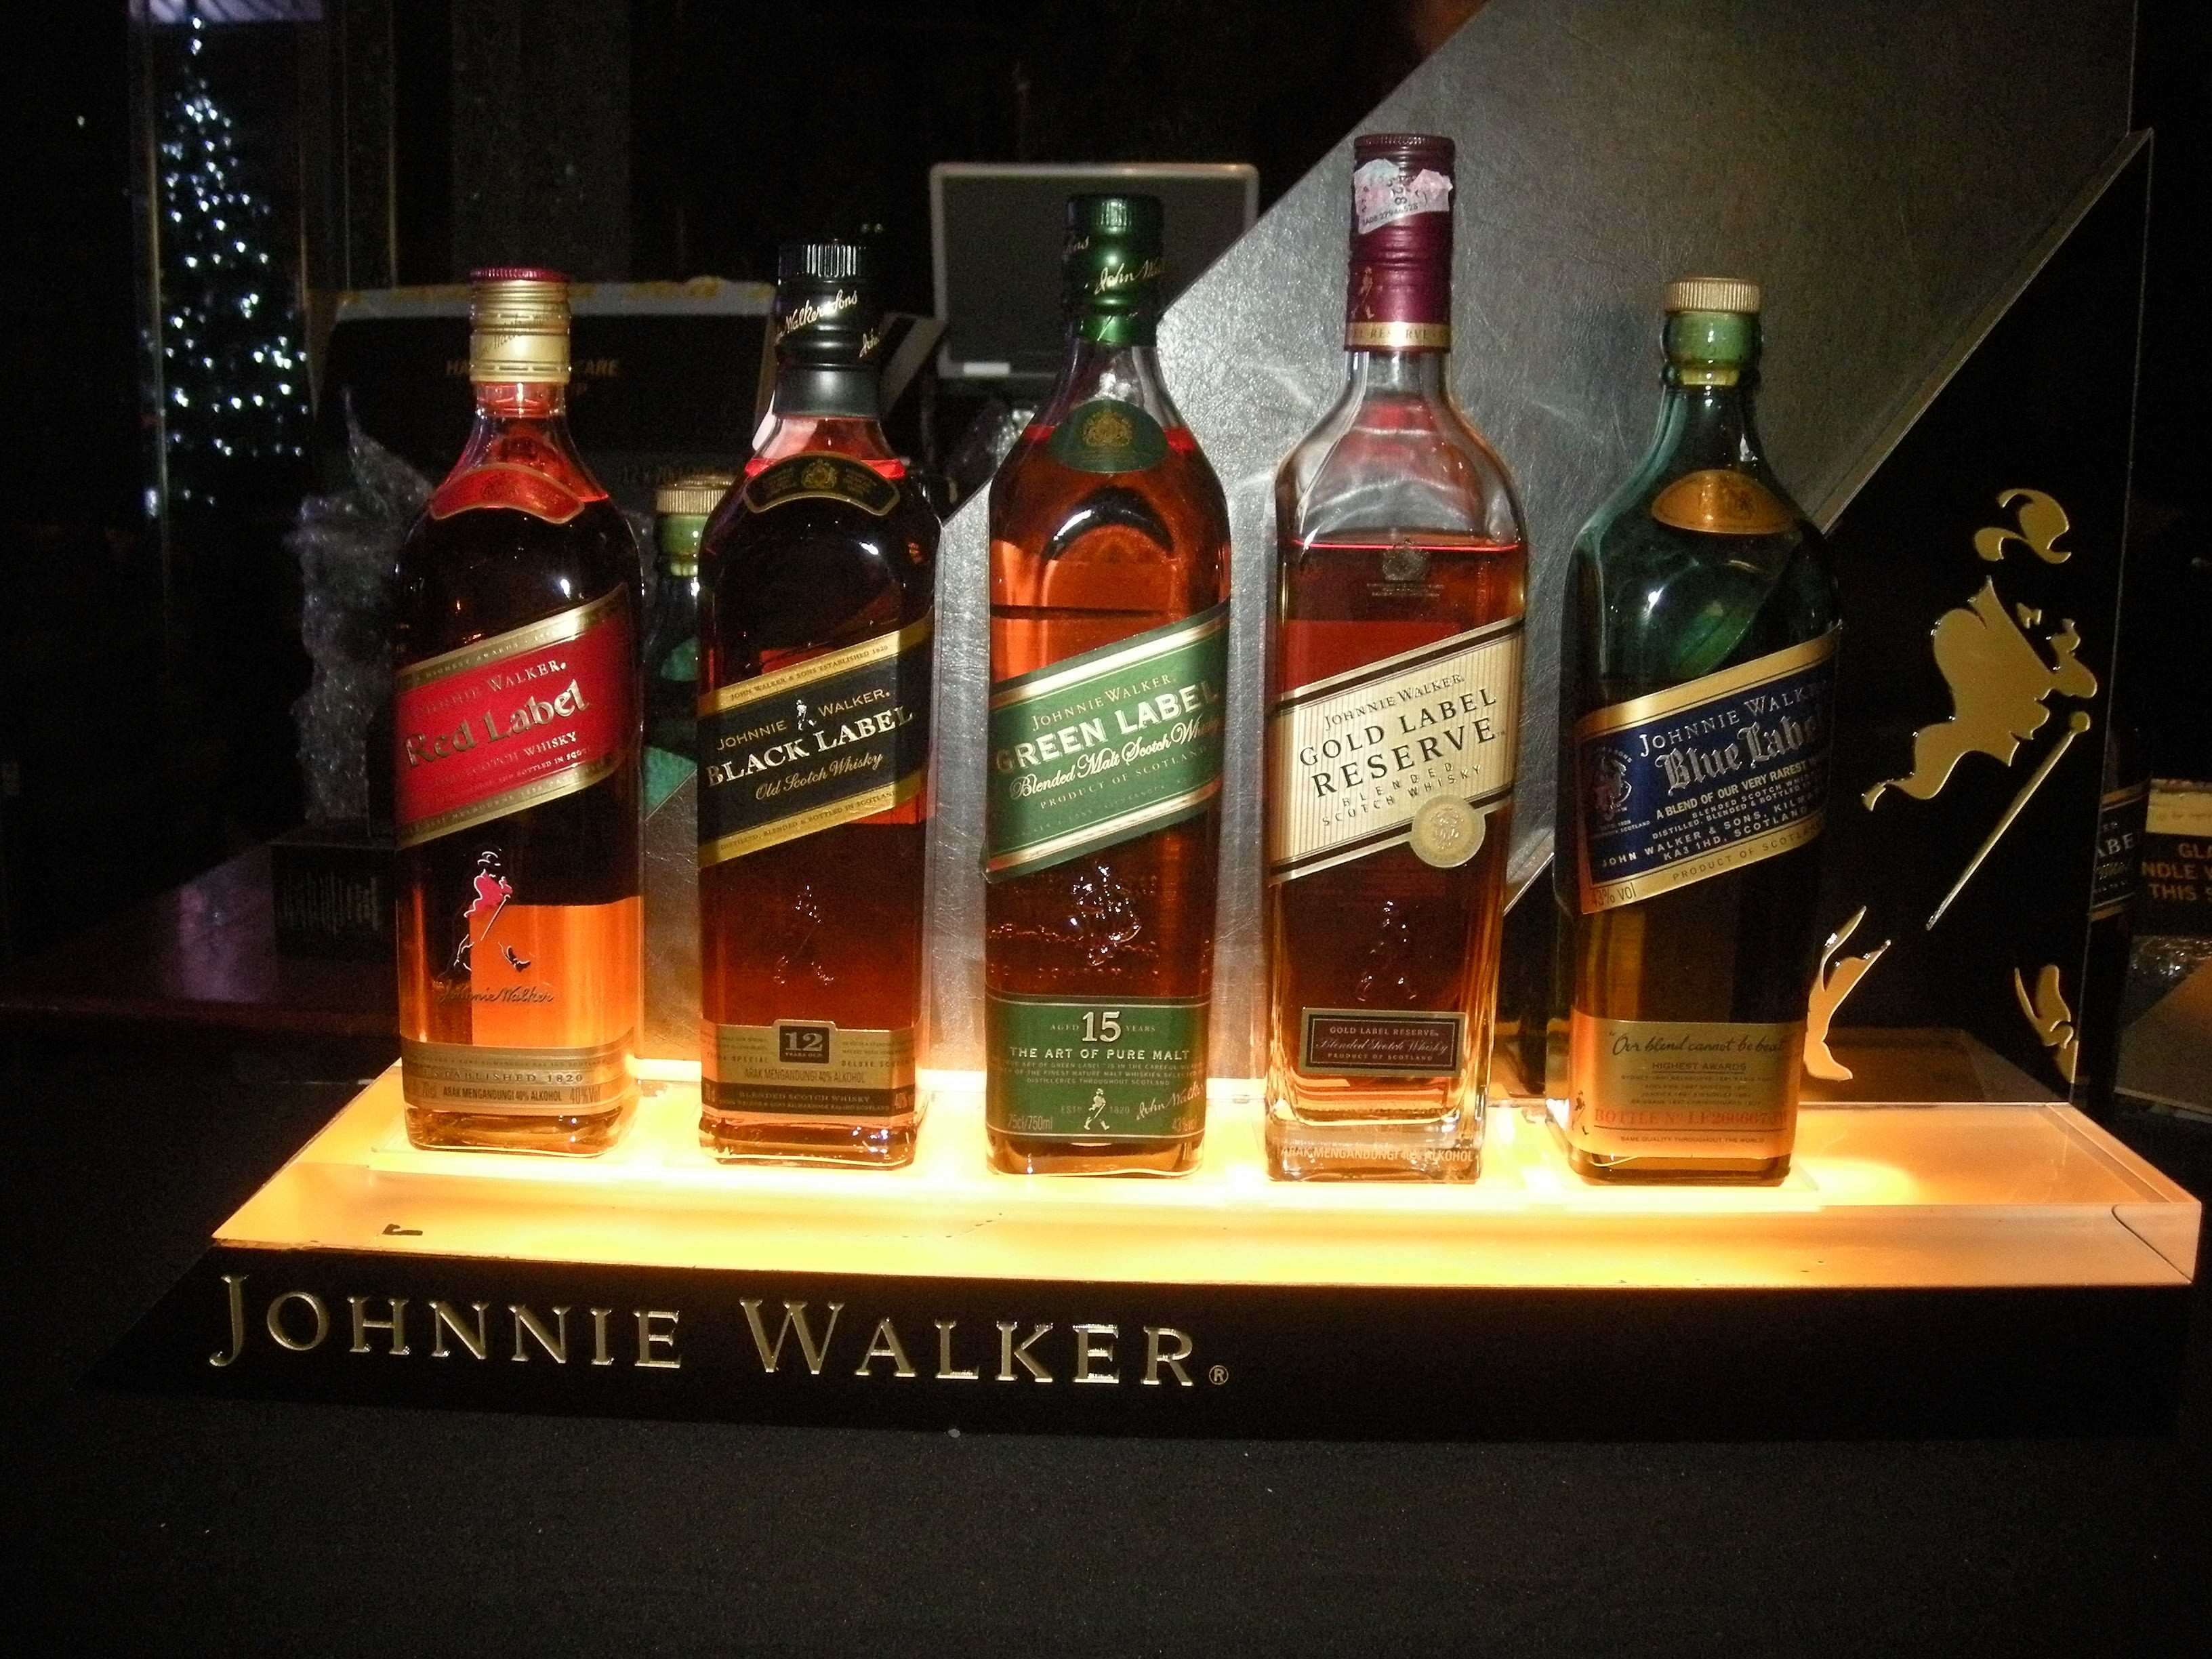 New Johnnie Walker Black Label Bottle Launch – timchew.net